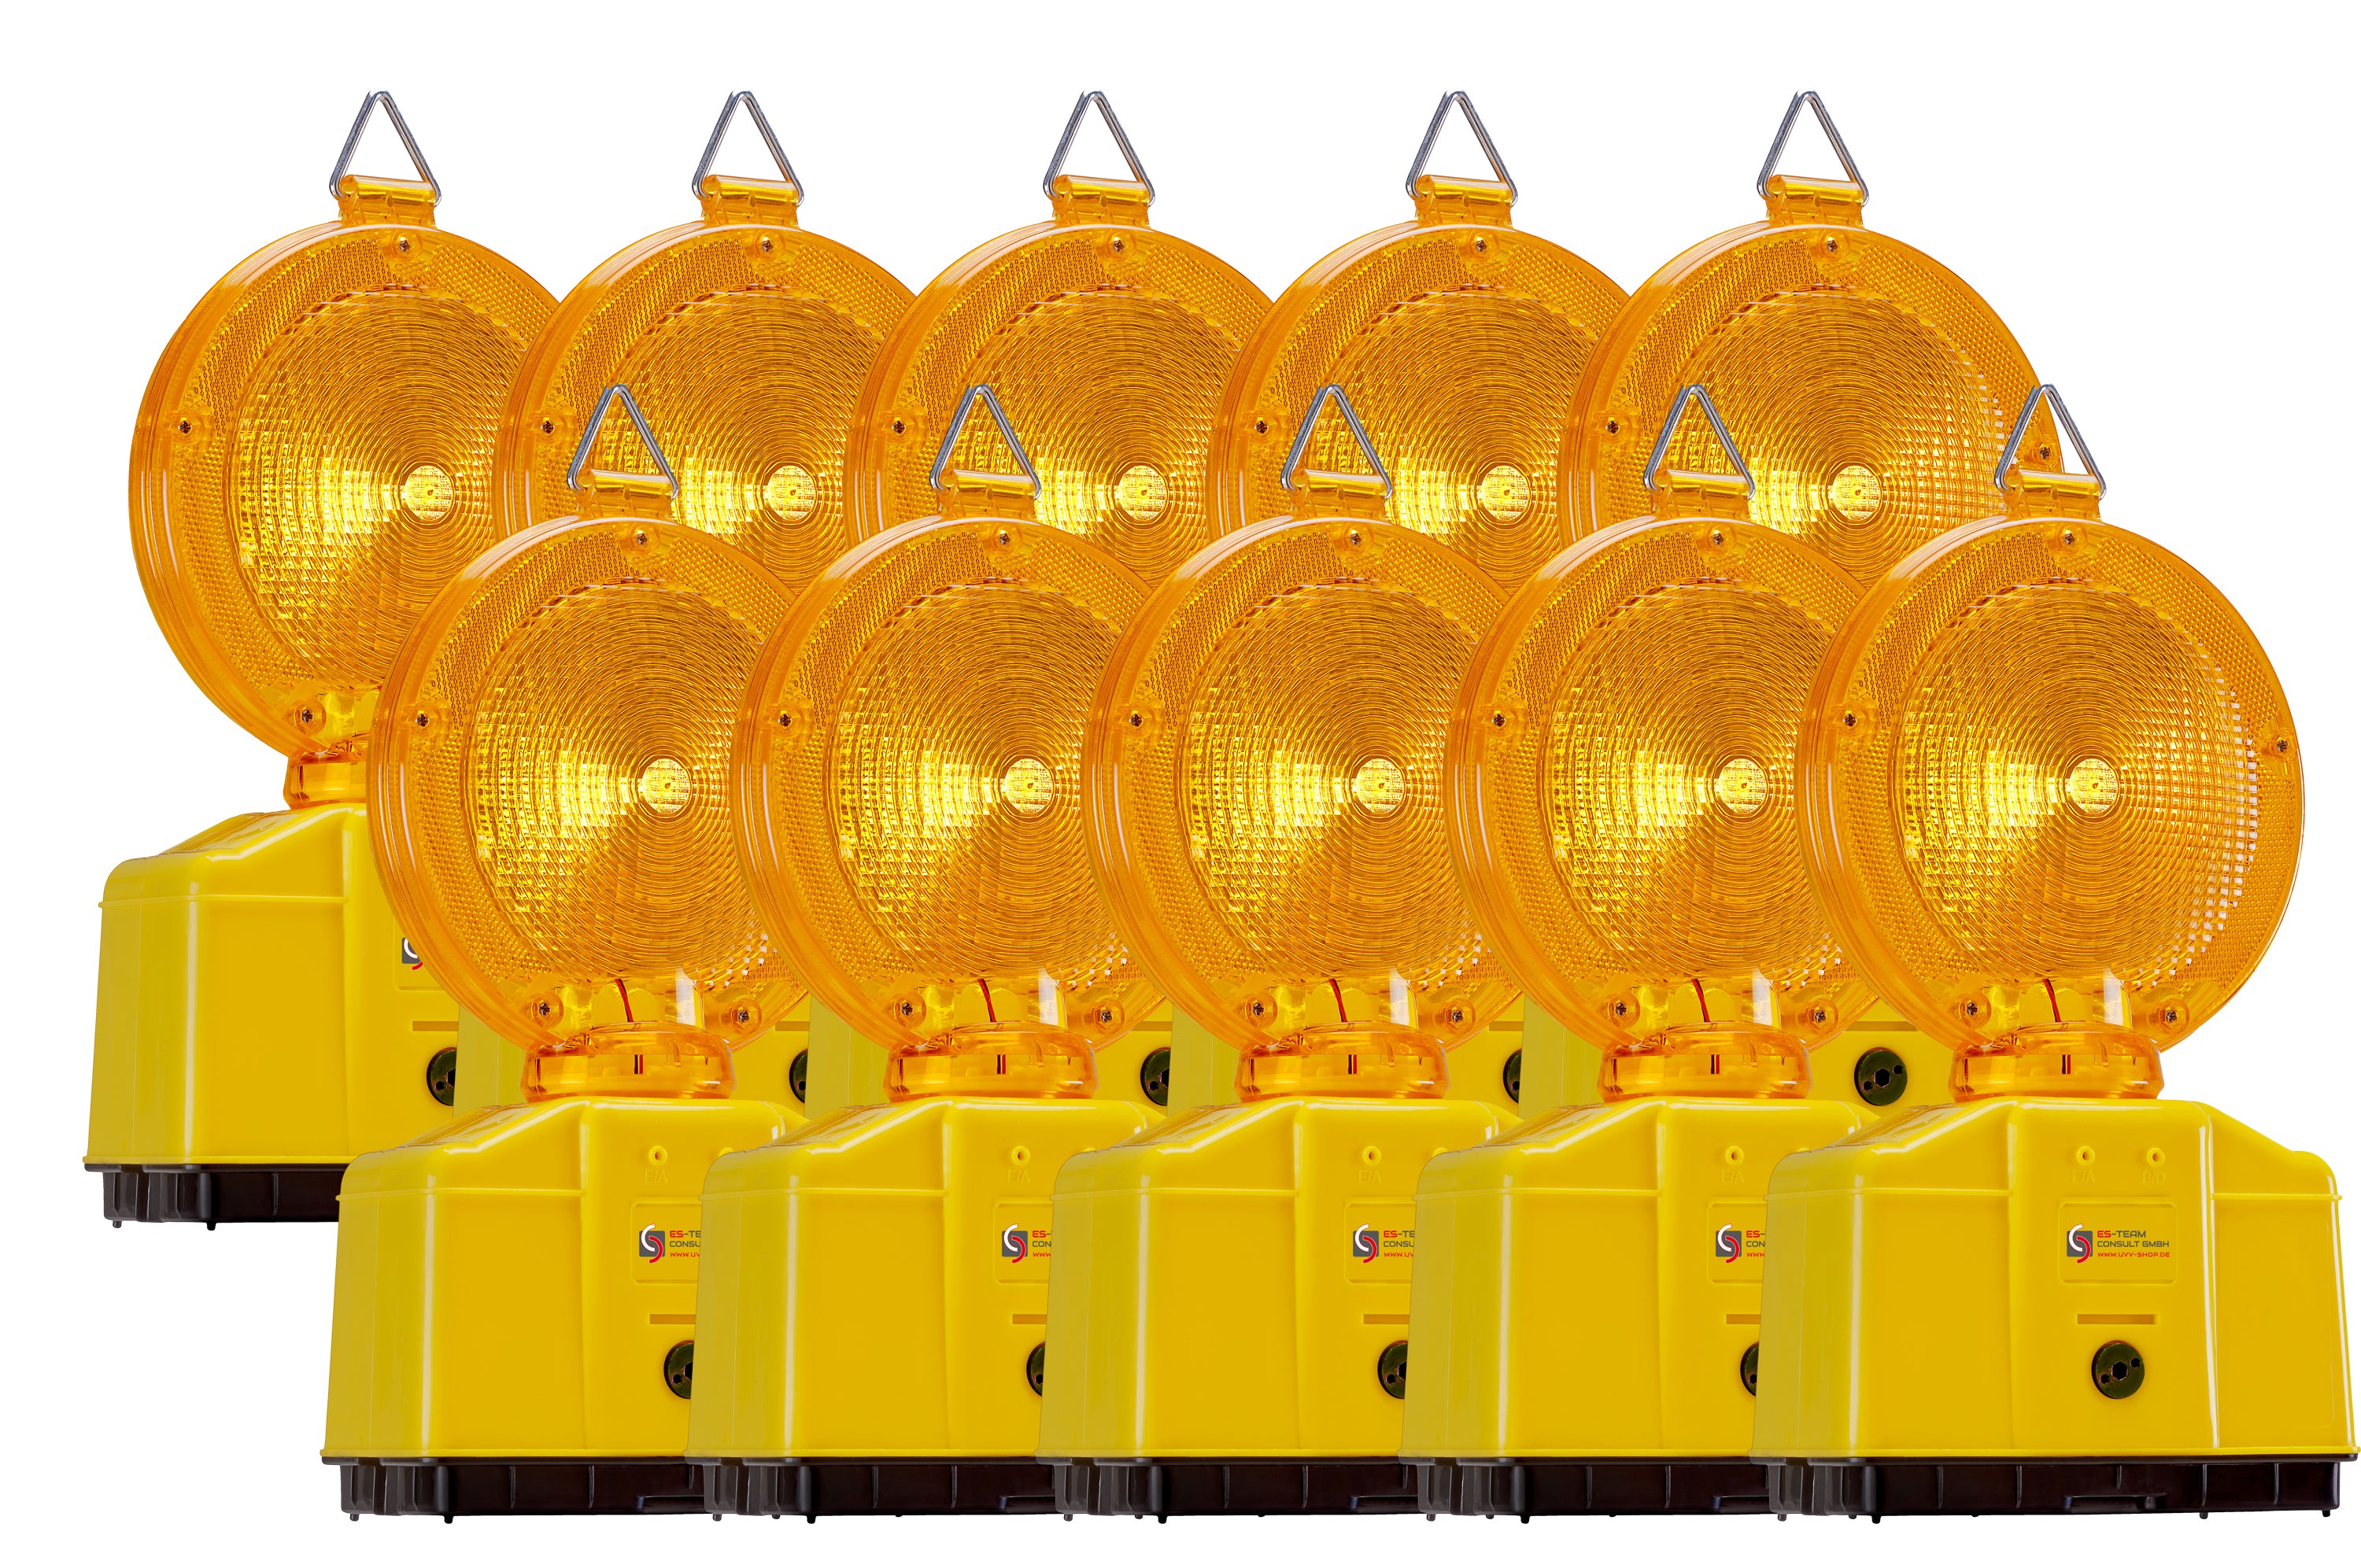 Baustellenleuchte Warnleuchte LED Baustellenlampe Rot oder Gelb Premium  4R25X